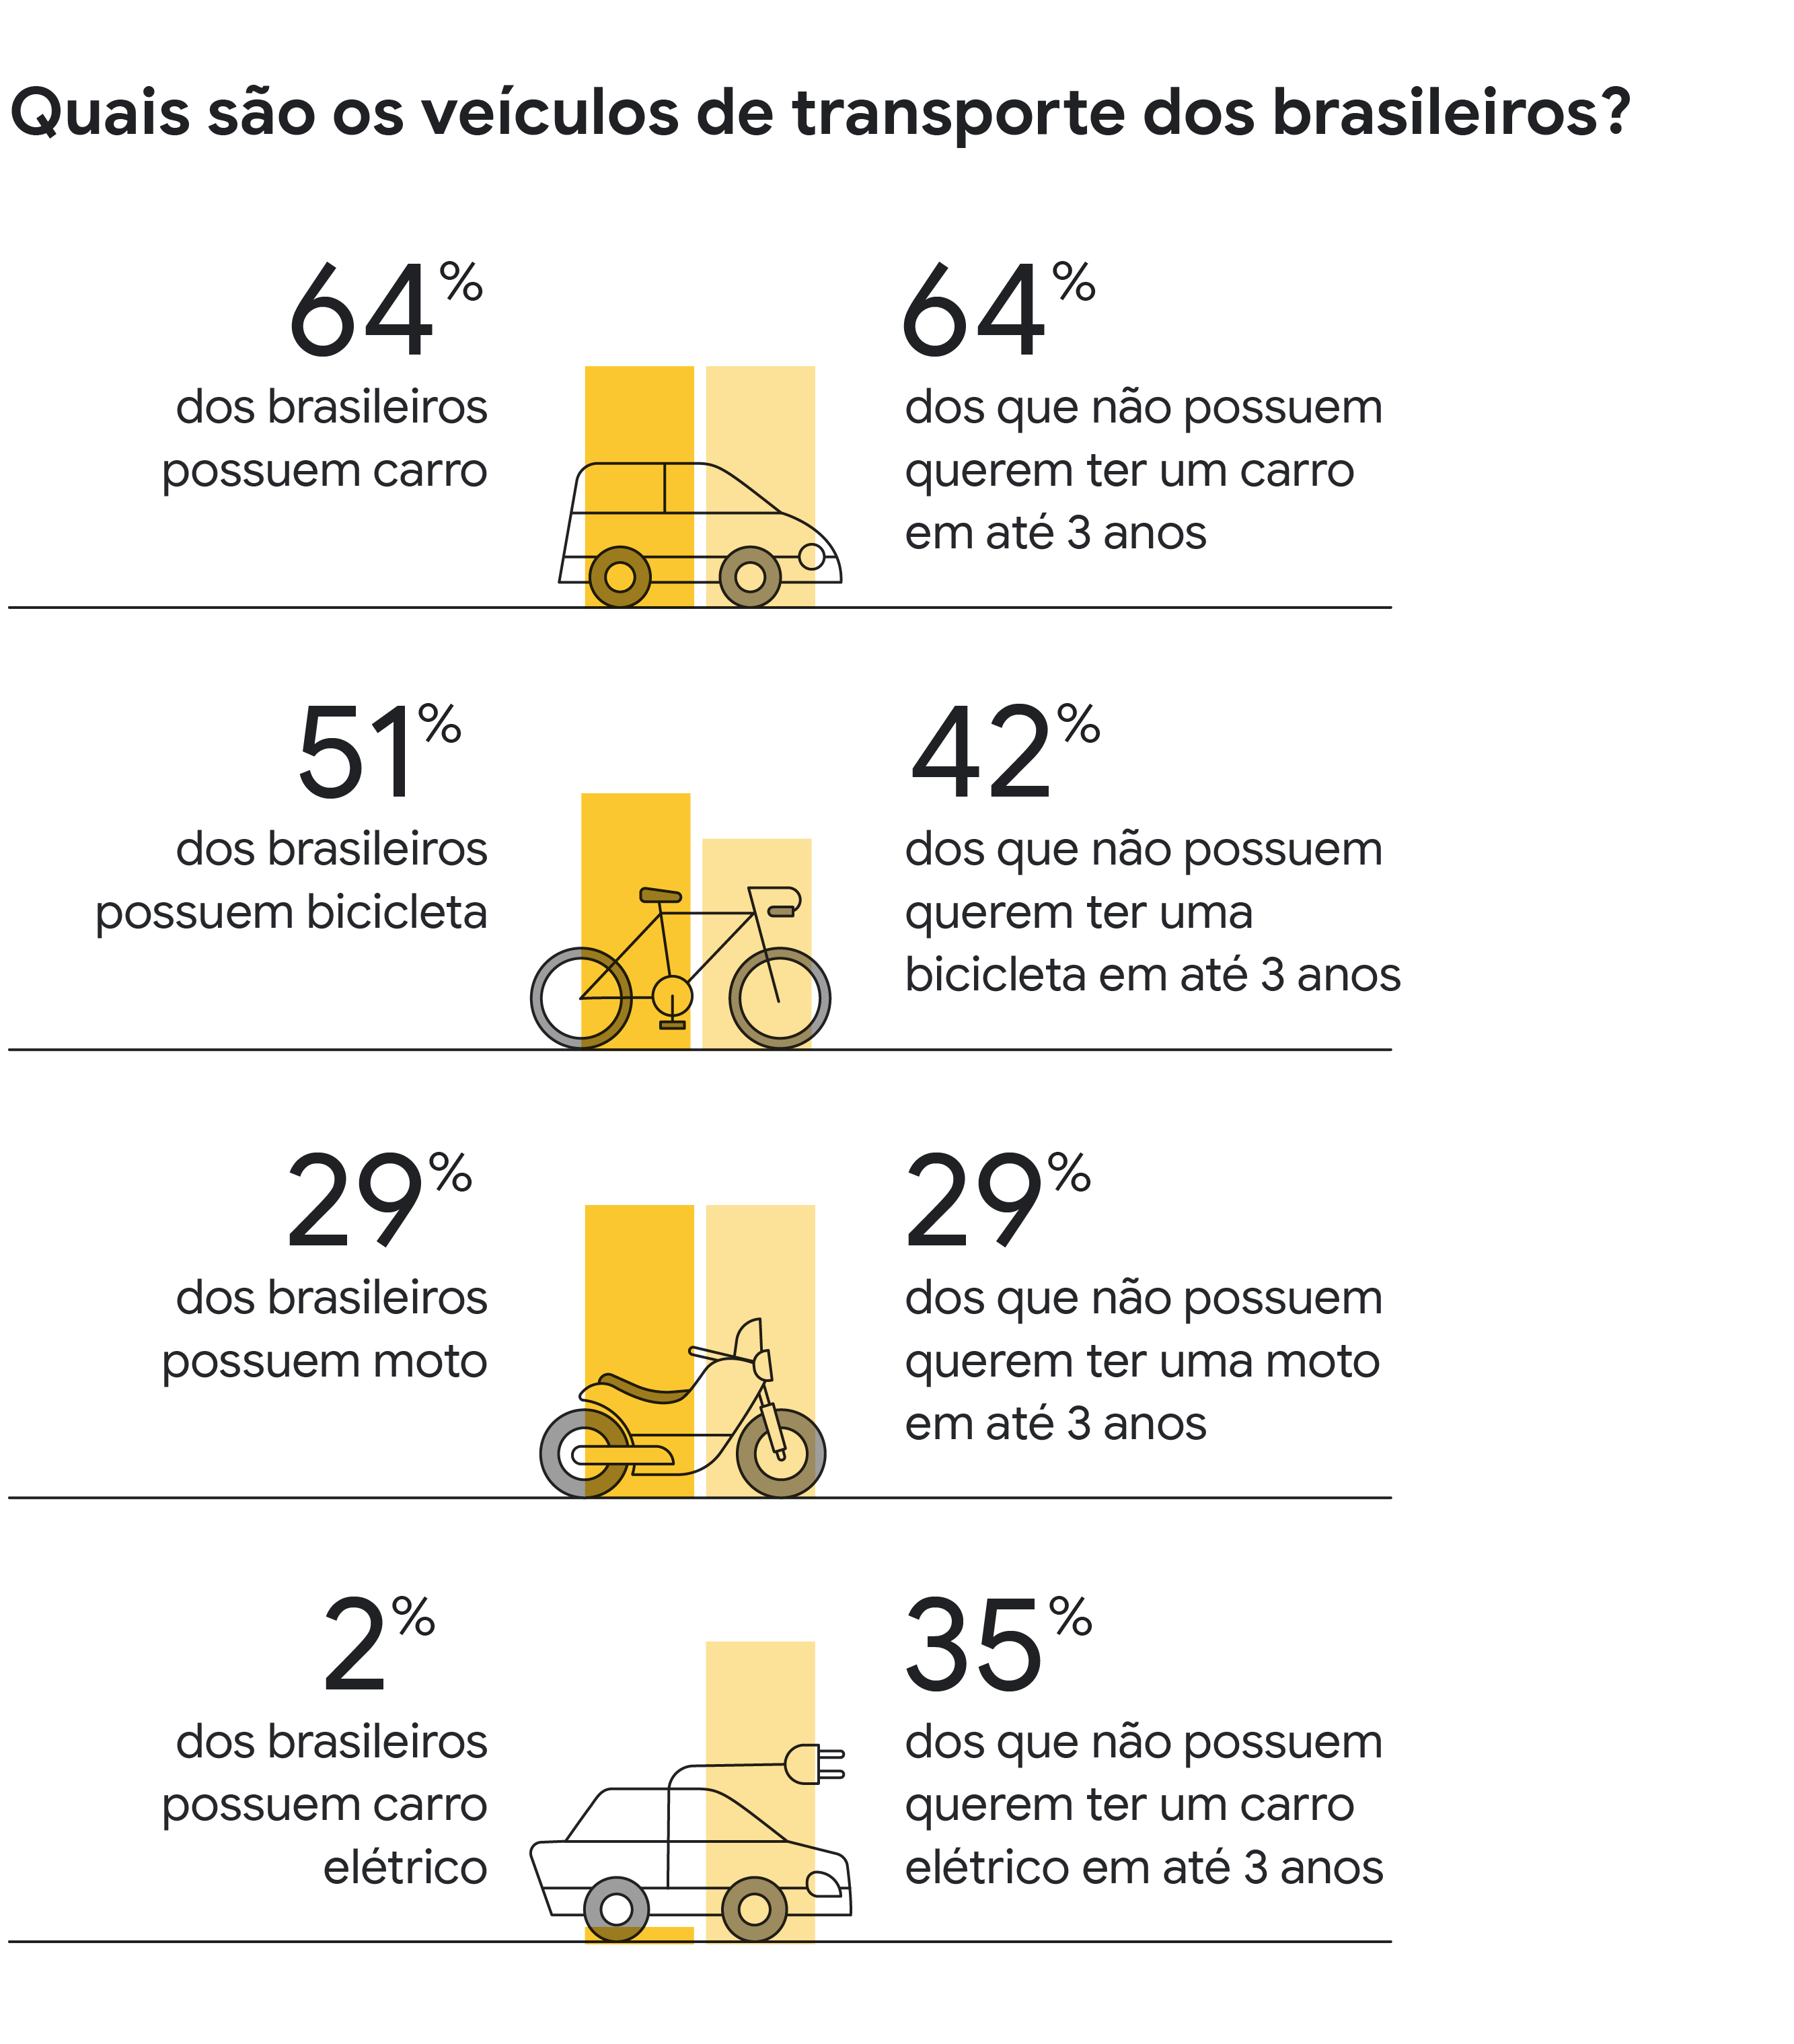 Quais são os veículos de transporte dos brasileiros? 64% dos brasileiros possuem carros. 64% dos que não possuem querem ter um carro em 3 anos. 51% dos brasileiros possuem bicicleta. 42% dos que não possuem querem ter uma bicicleta em 3 anos.